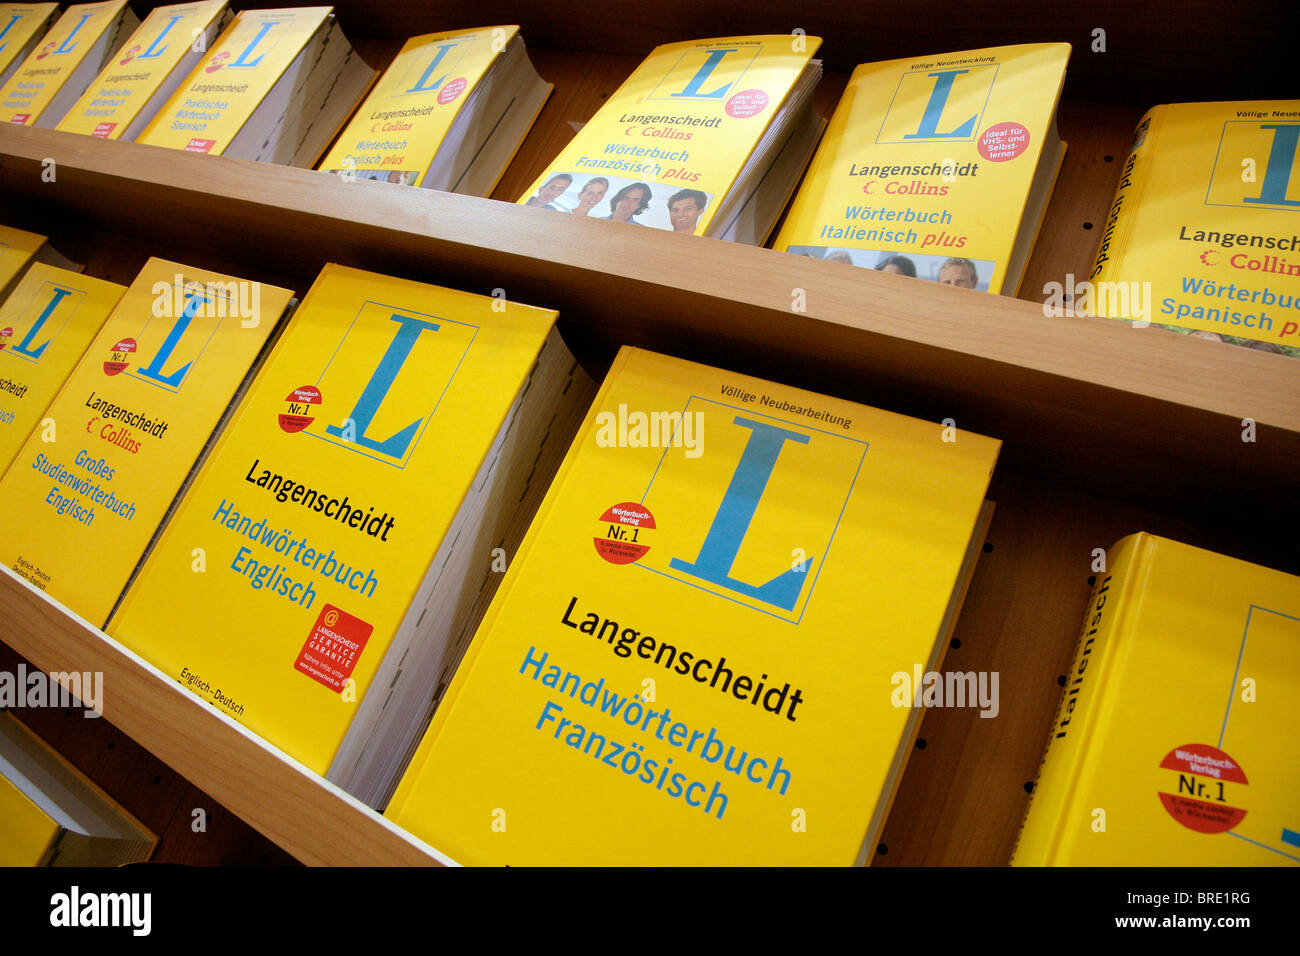 Diccionarios Langenscheidt publicado por la editorial Langenscheidt KG en la Frankfurter Buchmesse 2007 Foto de stock